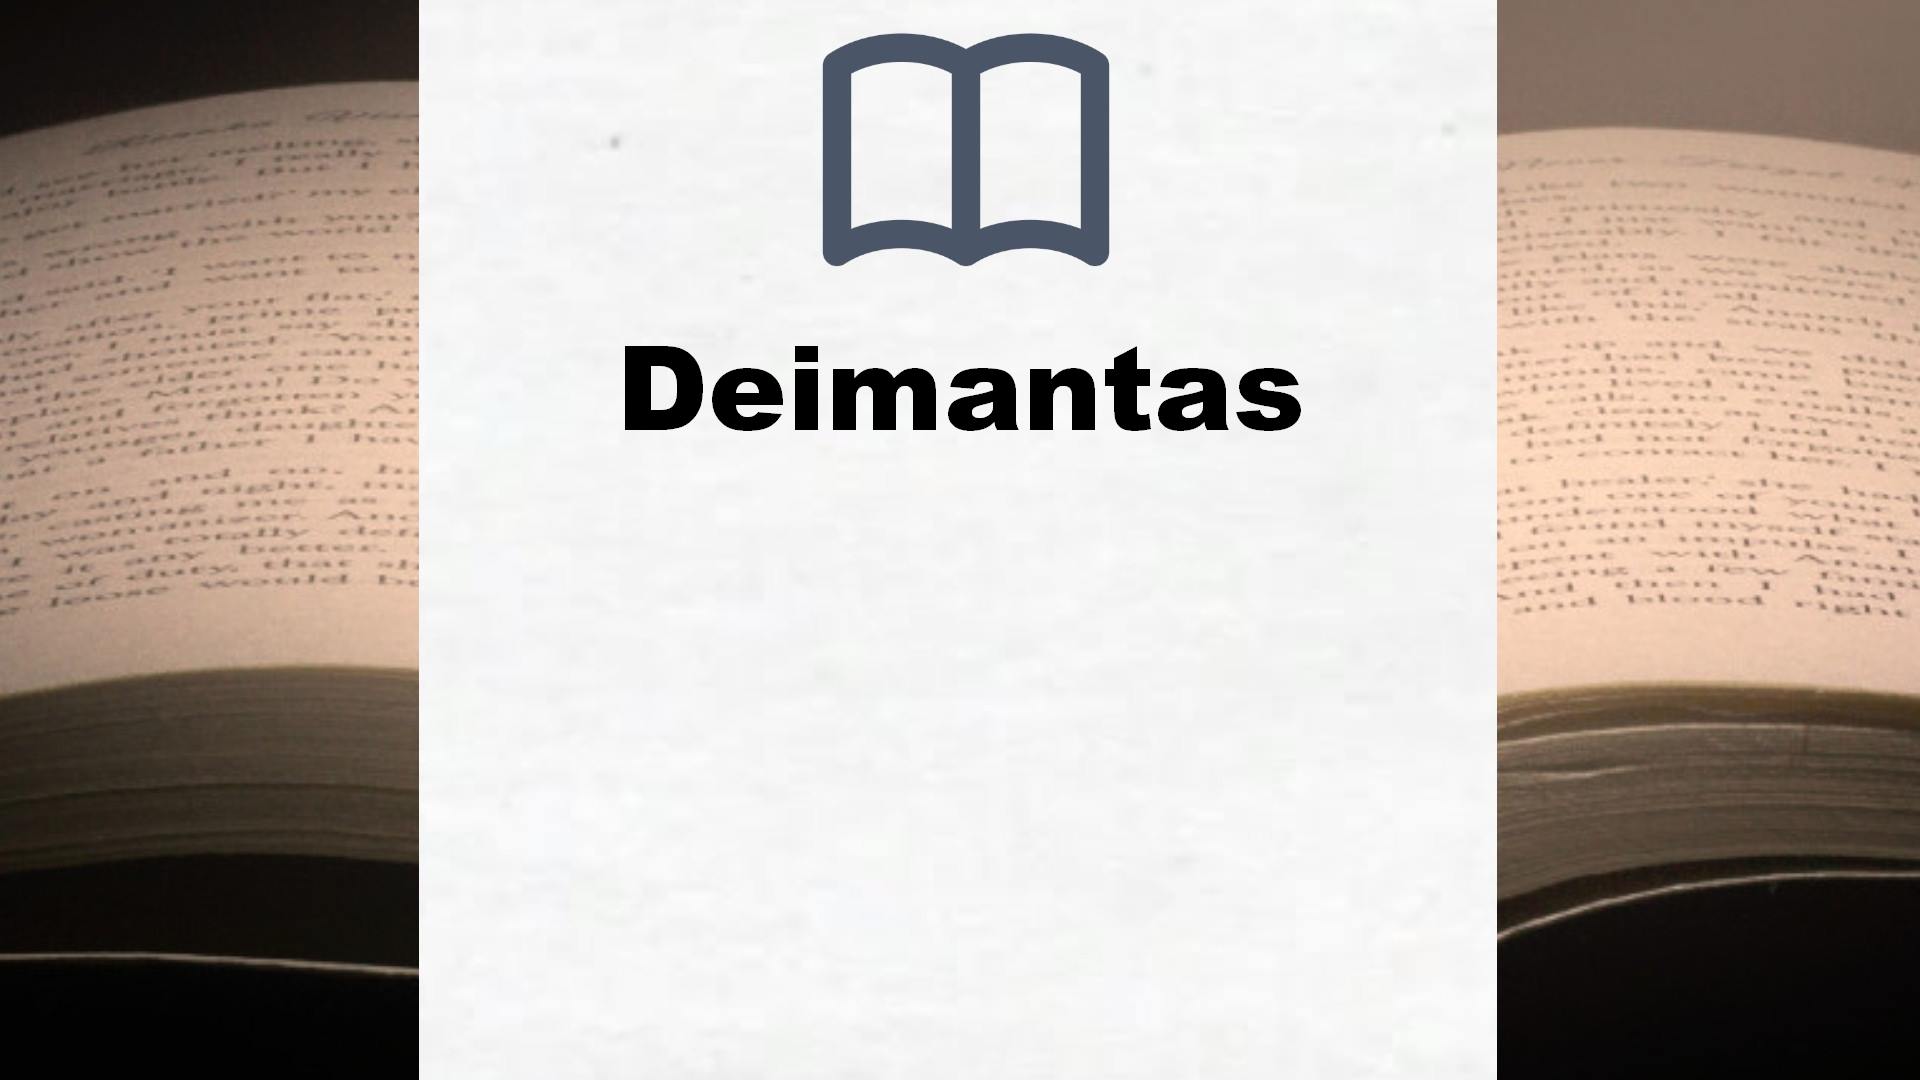 Bücher über Deimantas